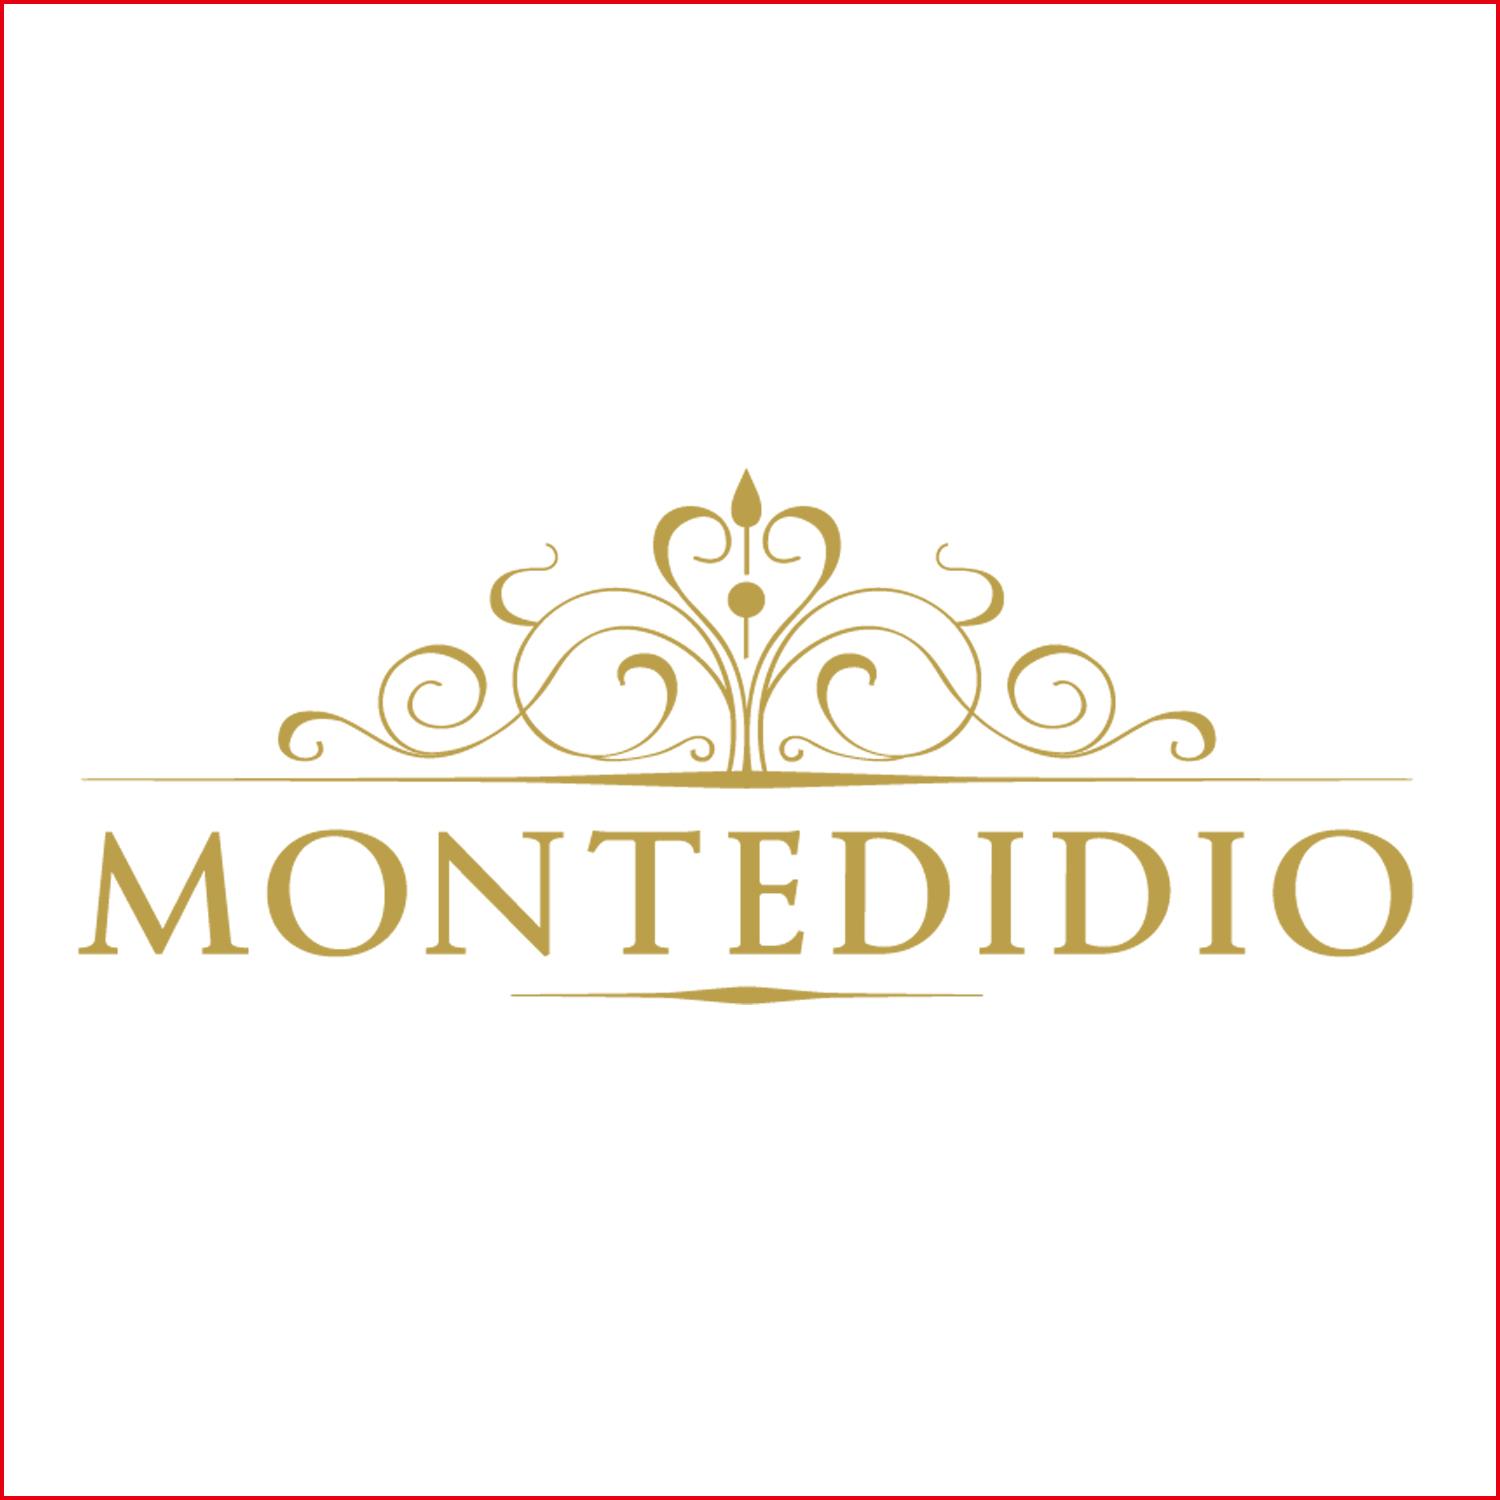 MONTEDIDIO Montedidio